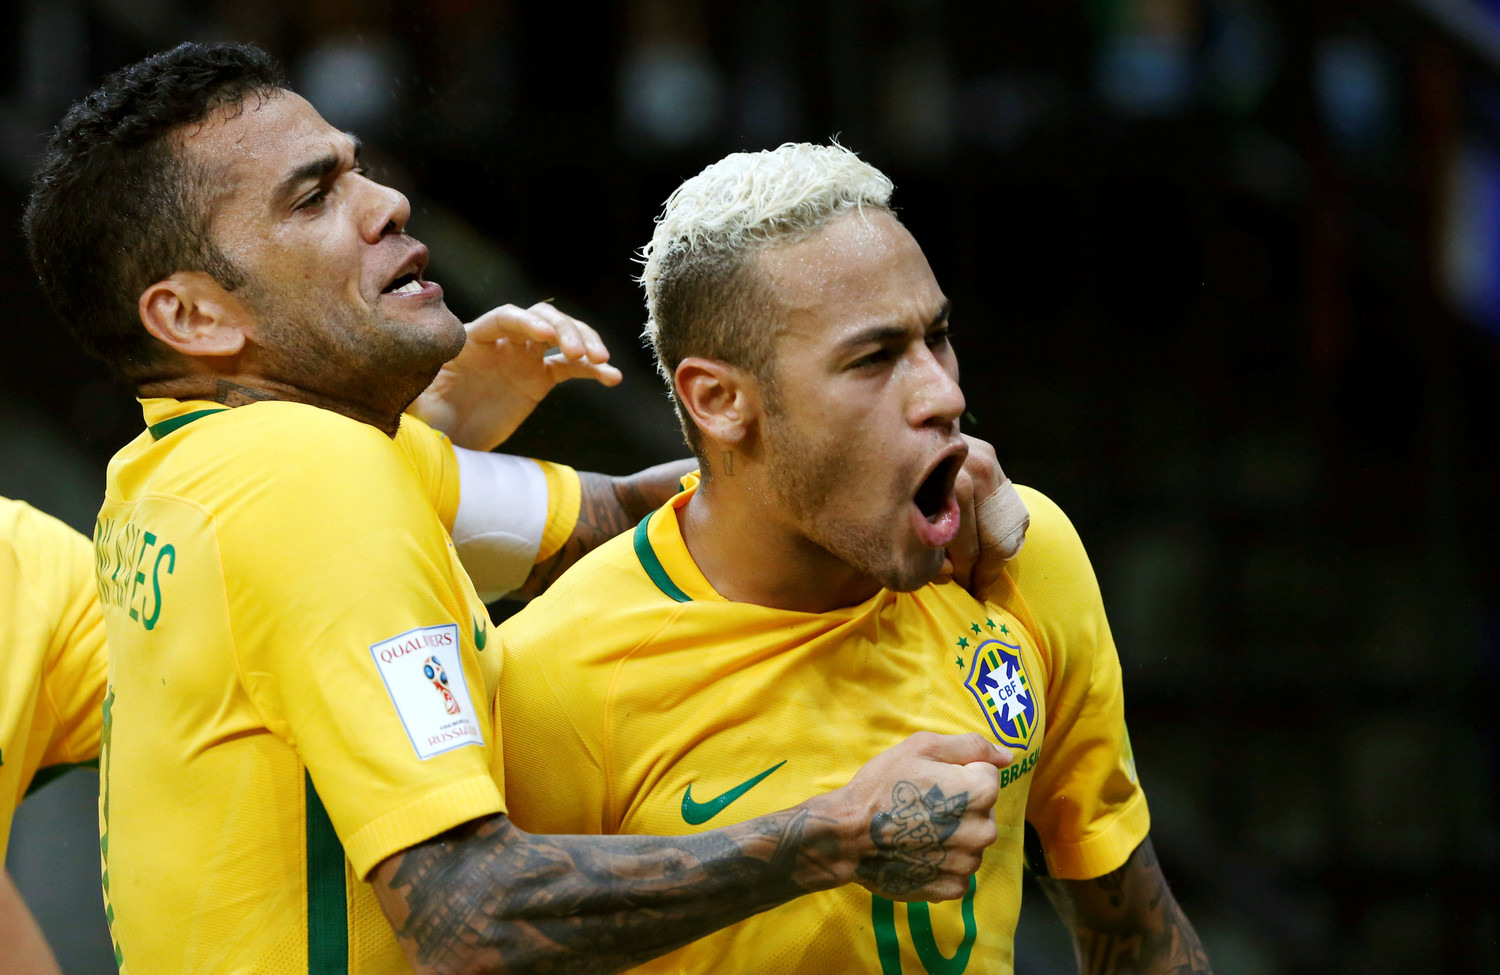 Сколька неймар забил за национальную сборную бразилии